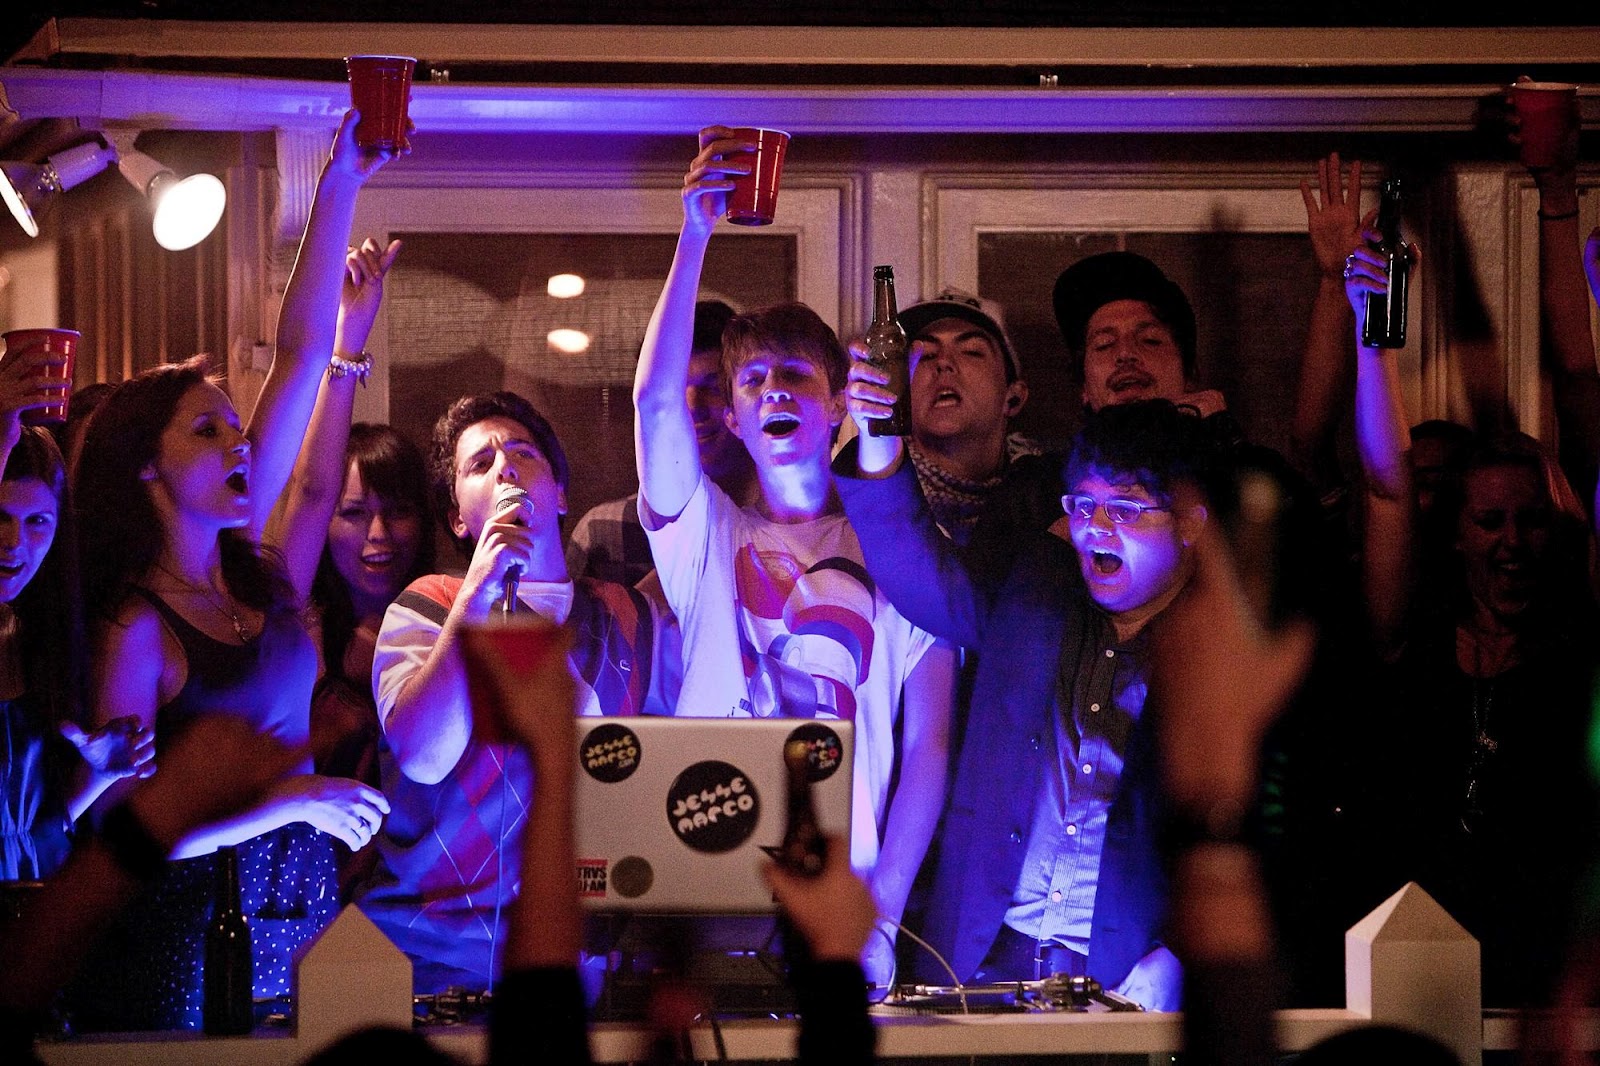 Des adolescents ivres font la fête dans une maison (issue du film Projet X).